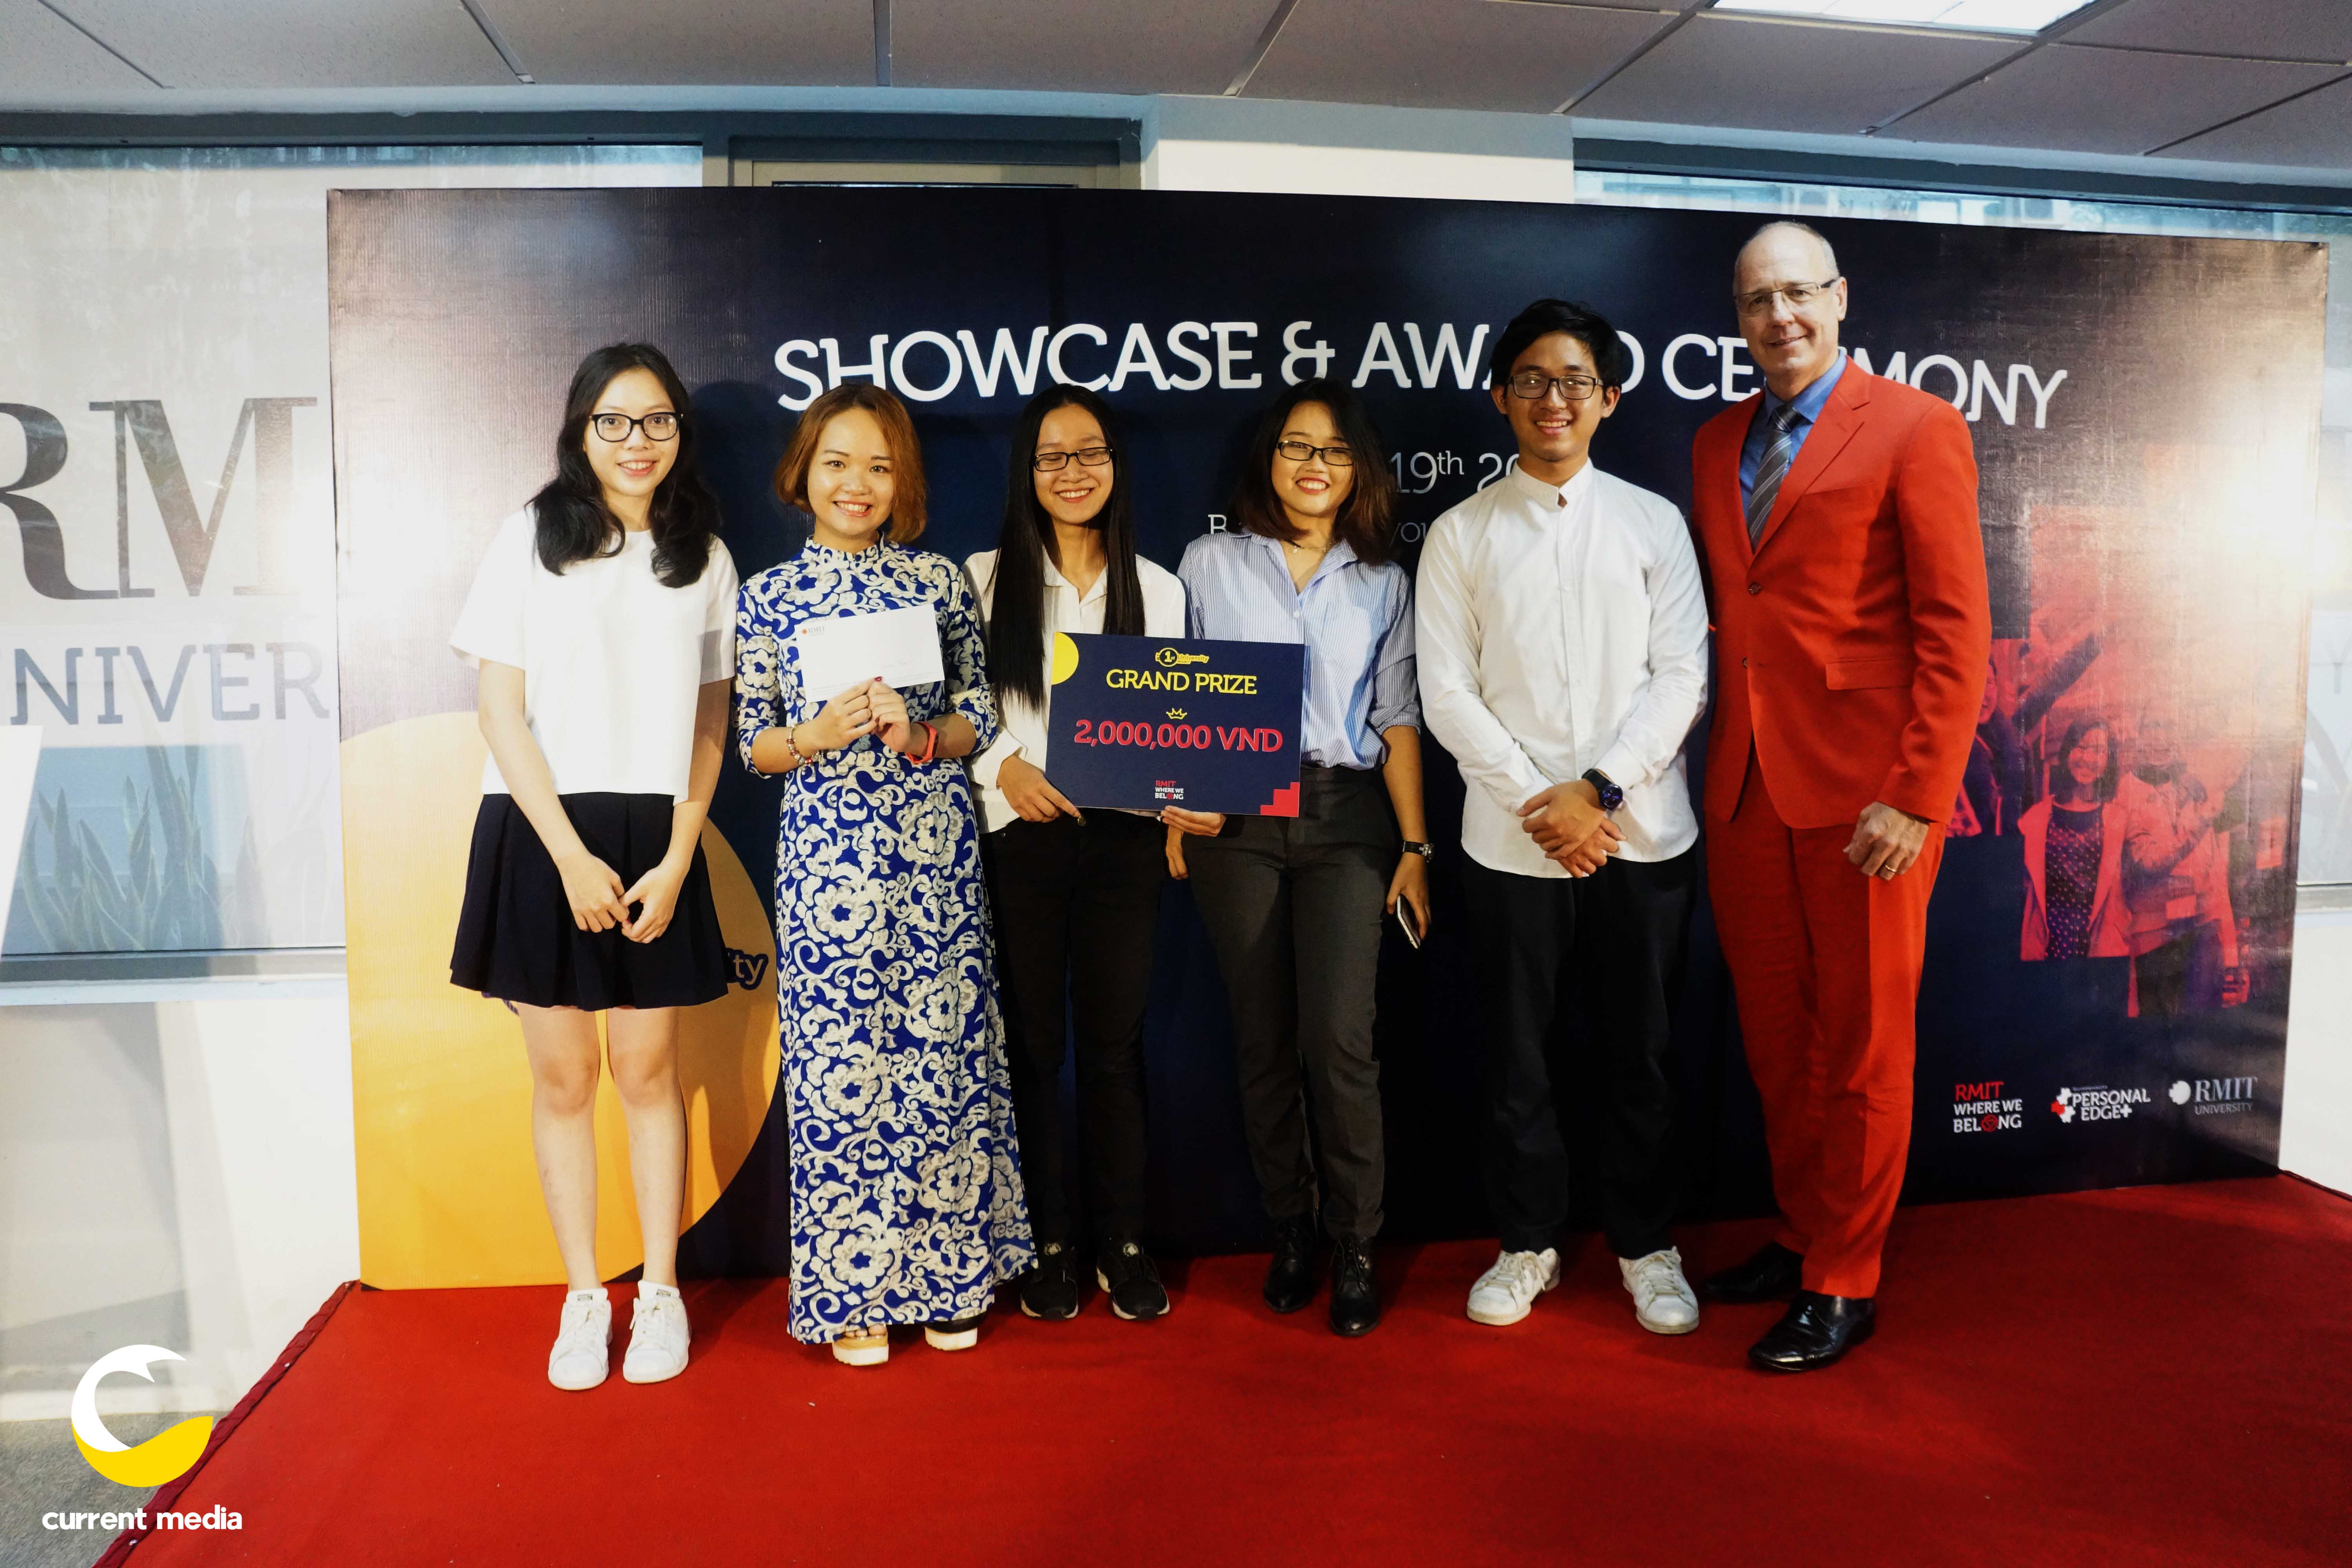 Tại cơ sở Hà Nội, đội Wonder đã giành giải Đặc biệt với dự án "Me after you"